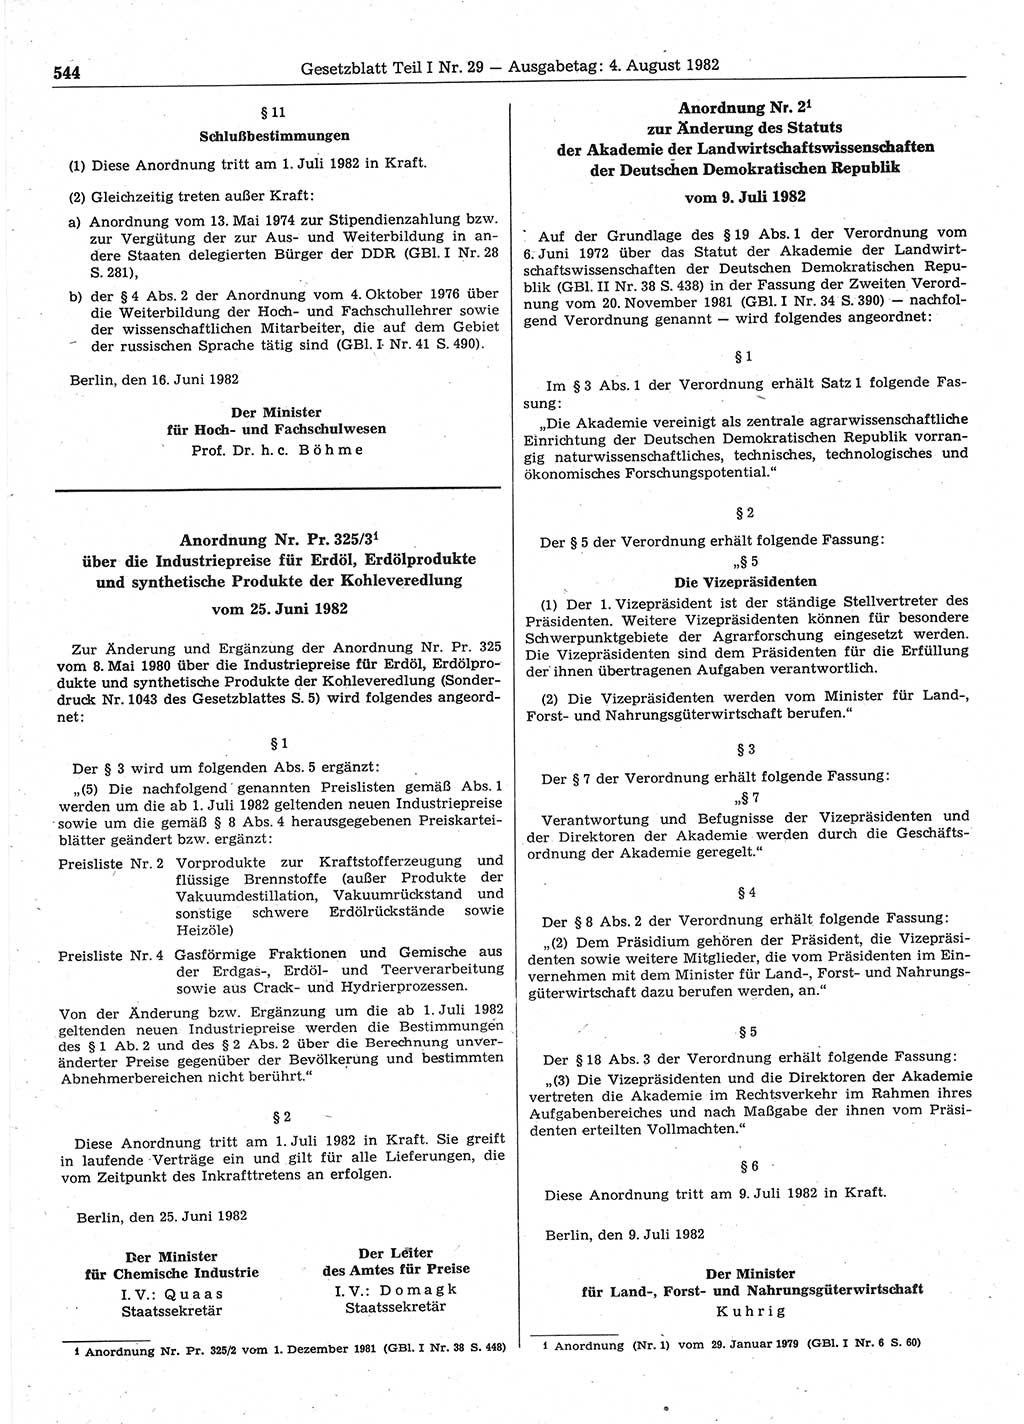 Gesetzblatt (GBl.) der Deutschen Demokratischen Republik (DDR) Teil Ⅰ 1982, Seite 544 (GBl. DDR Ⅰ 1982, S. 544)